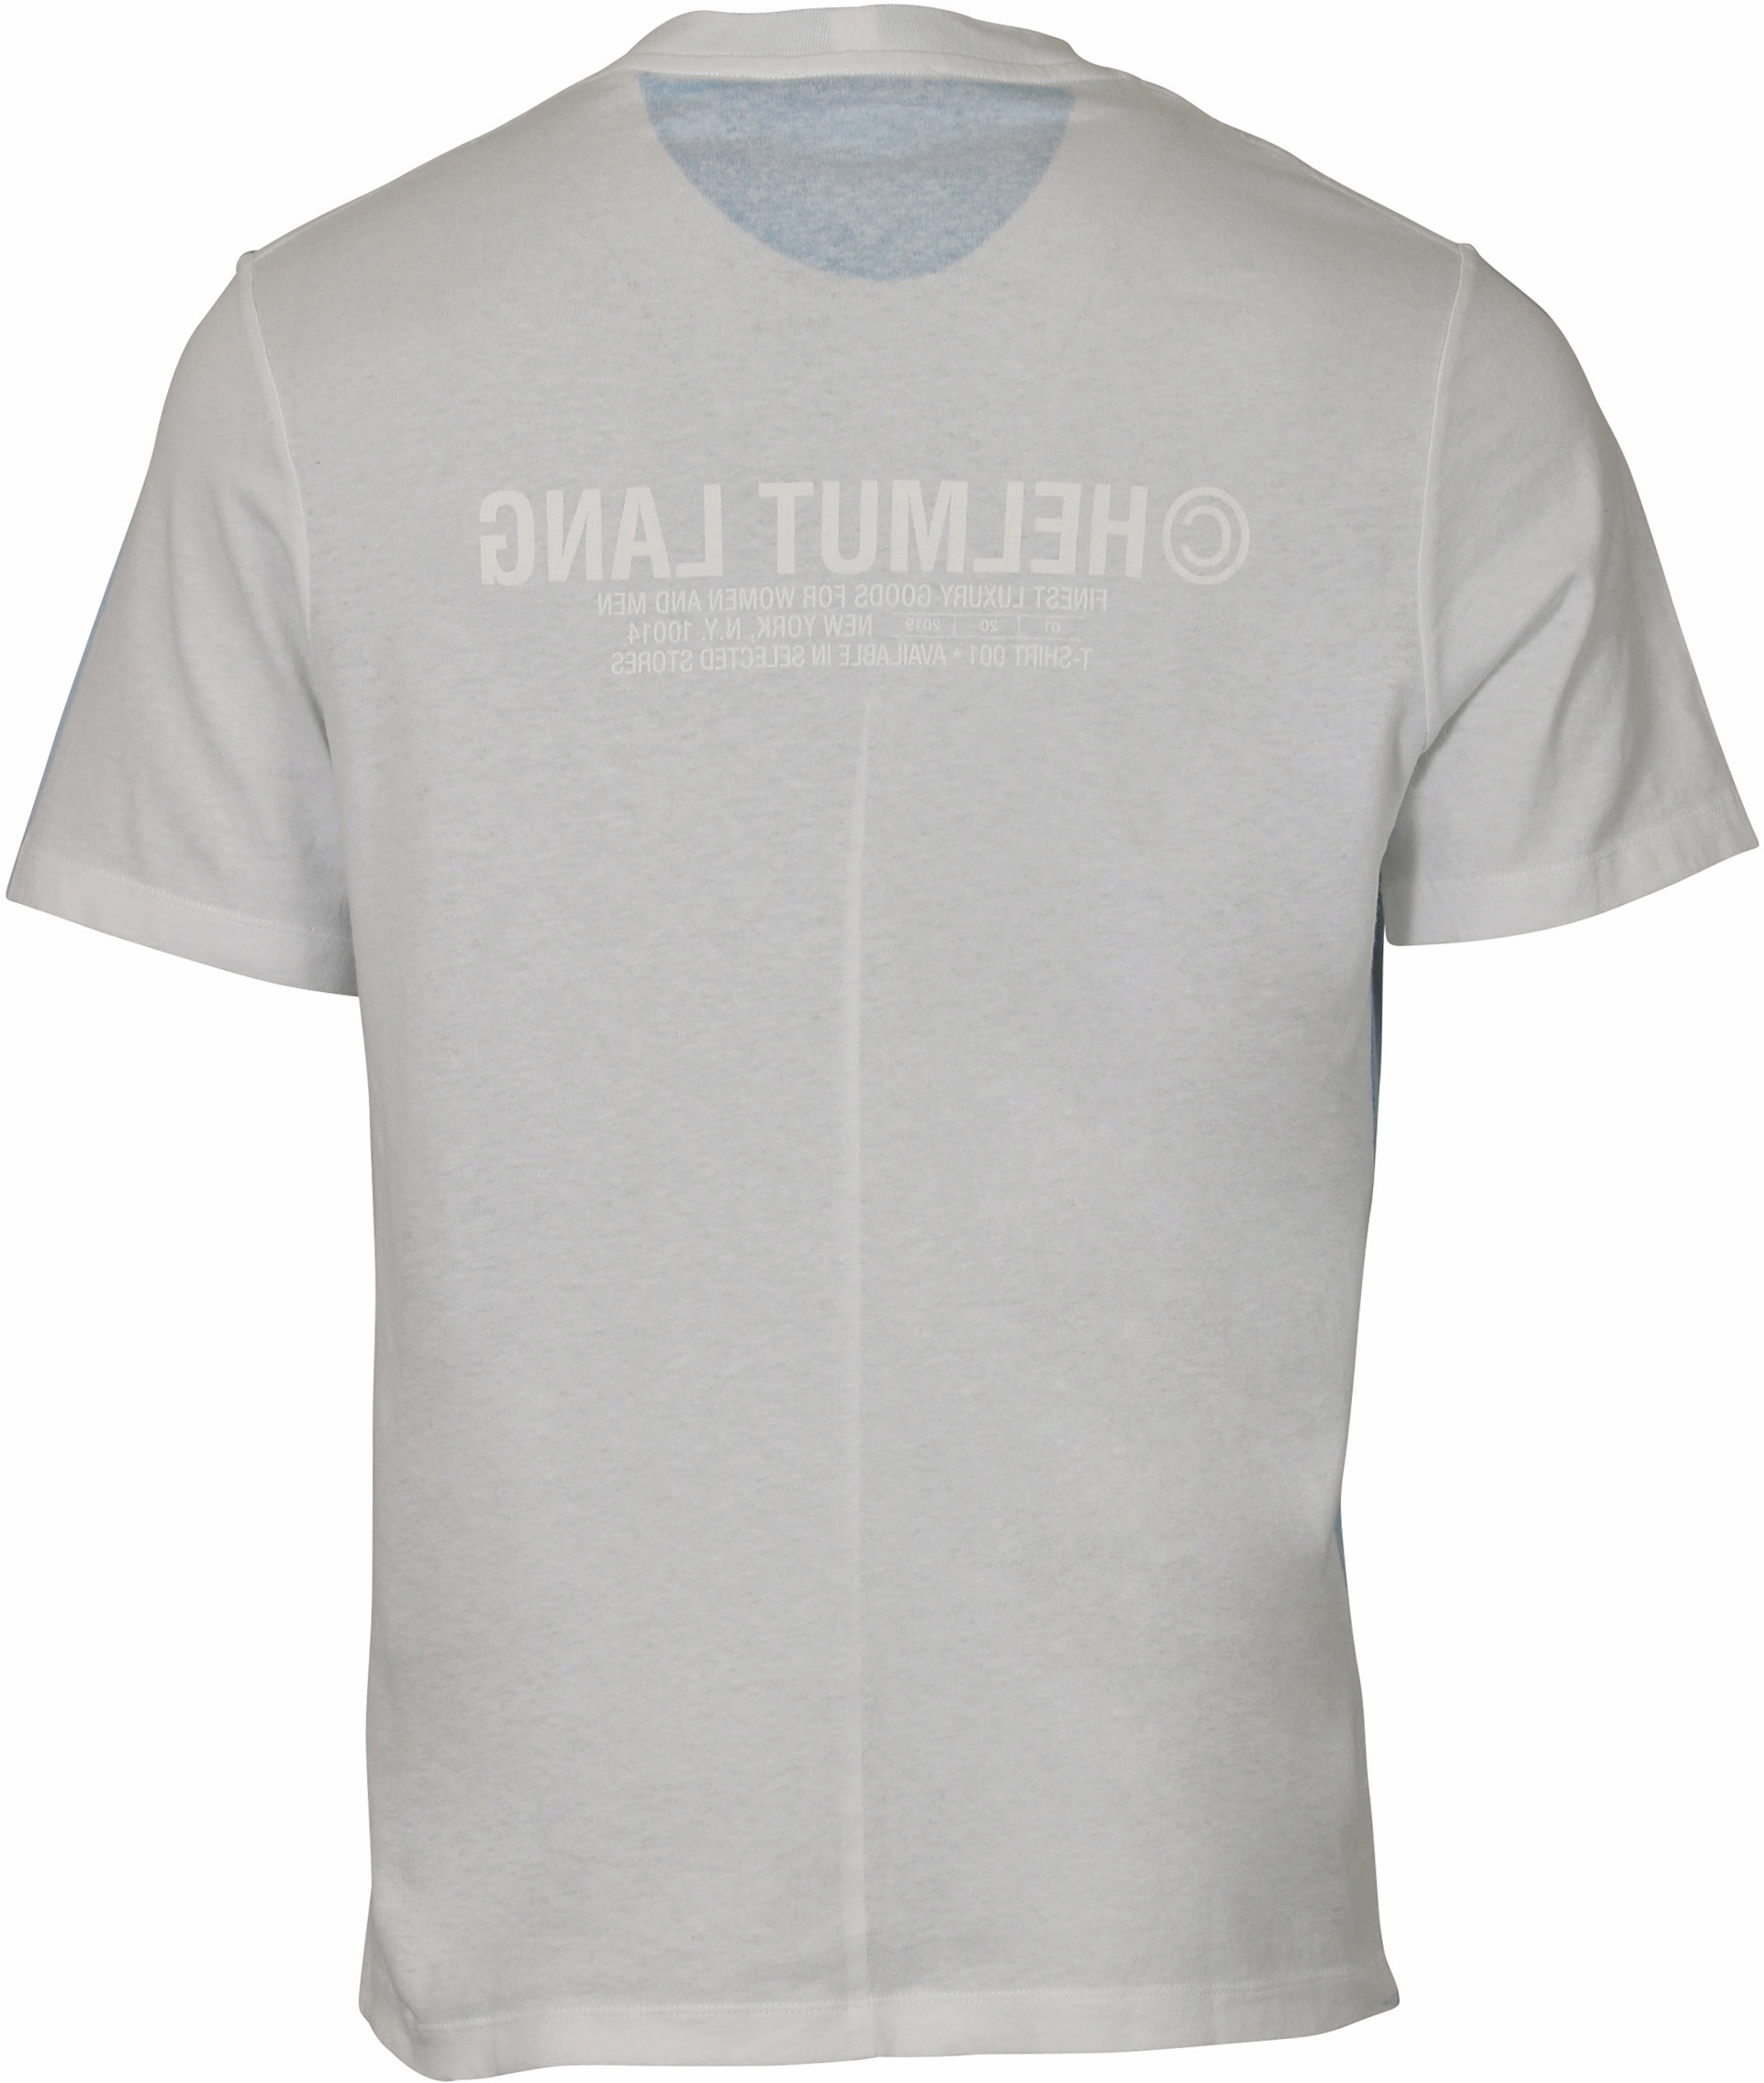 Helmut Lang T-Shirt Lightblue